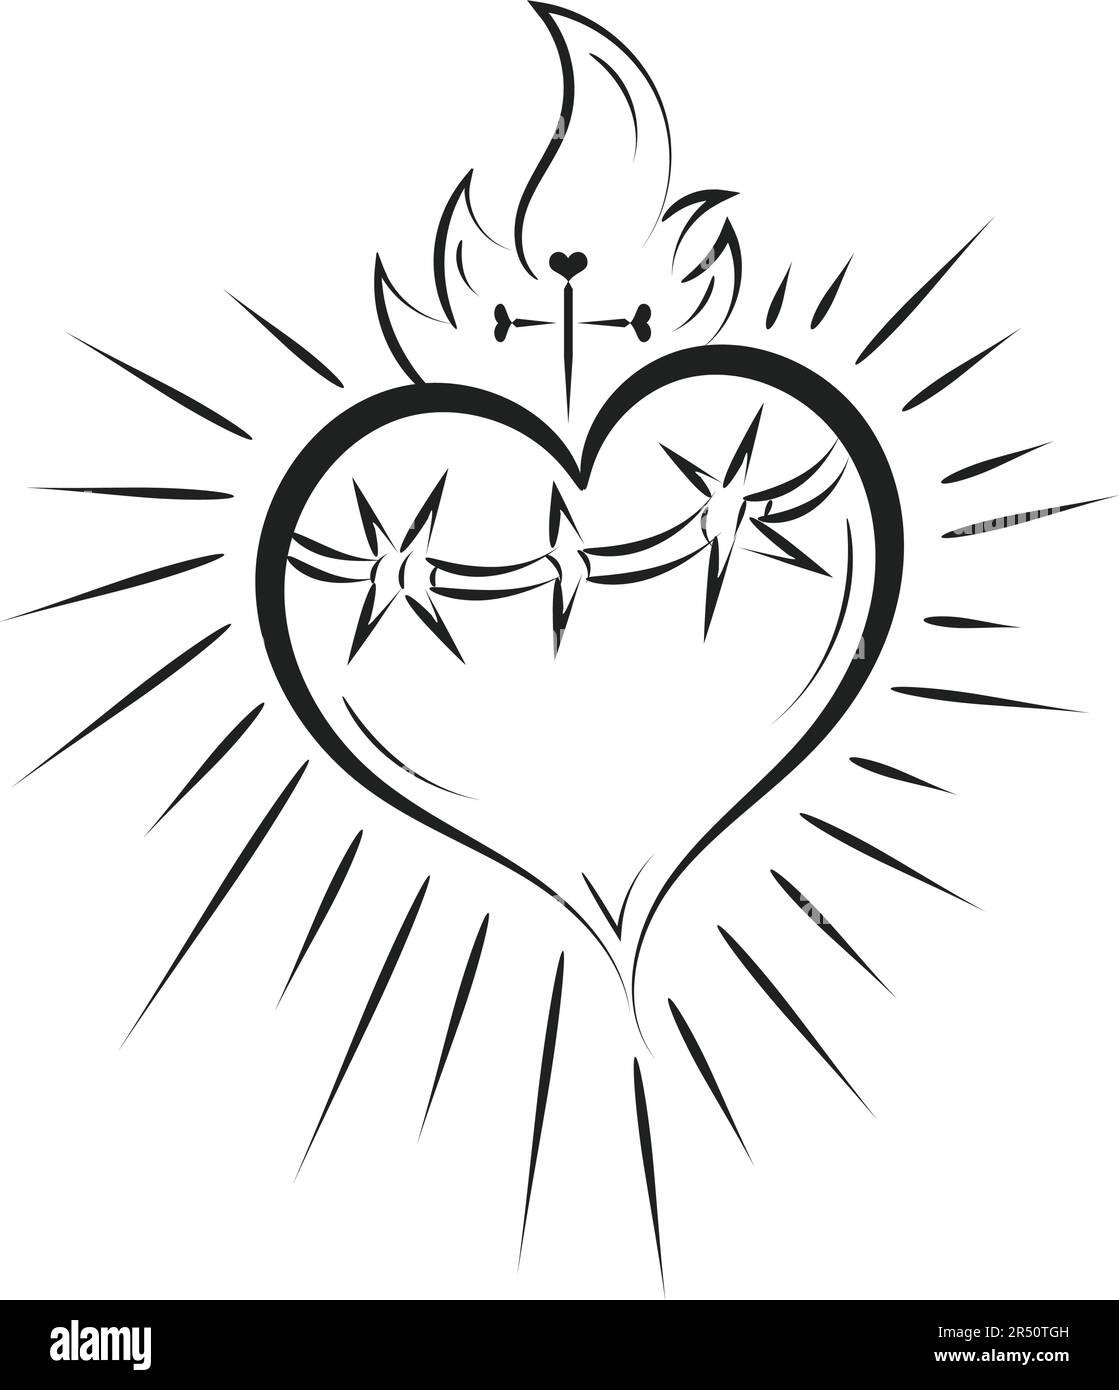 Das heilige Herz Jesu mit Strahlen Vektor Illustration zum Drucken oder als Poster, Flyer, Karte, Tätowierung oder T-Shirt Stock Vektor